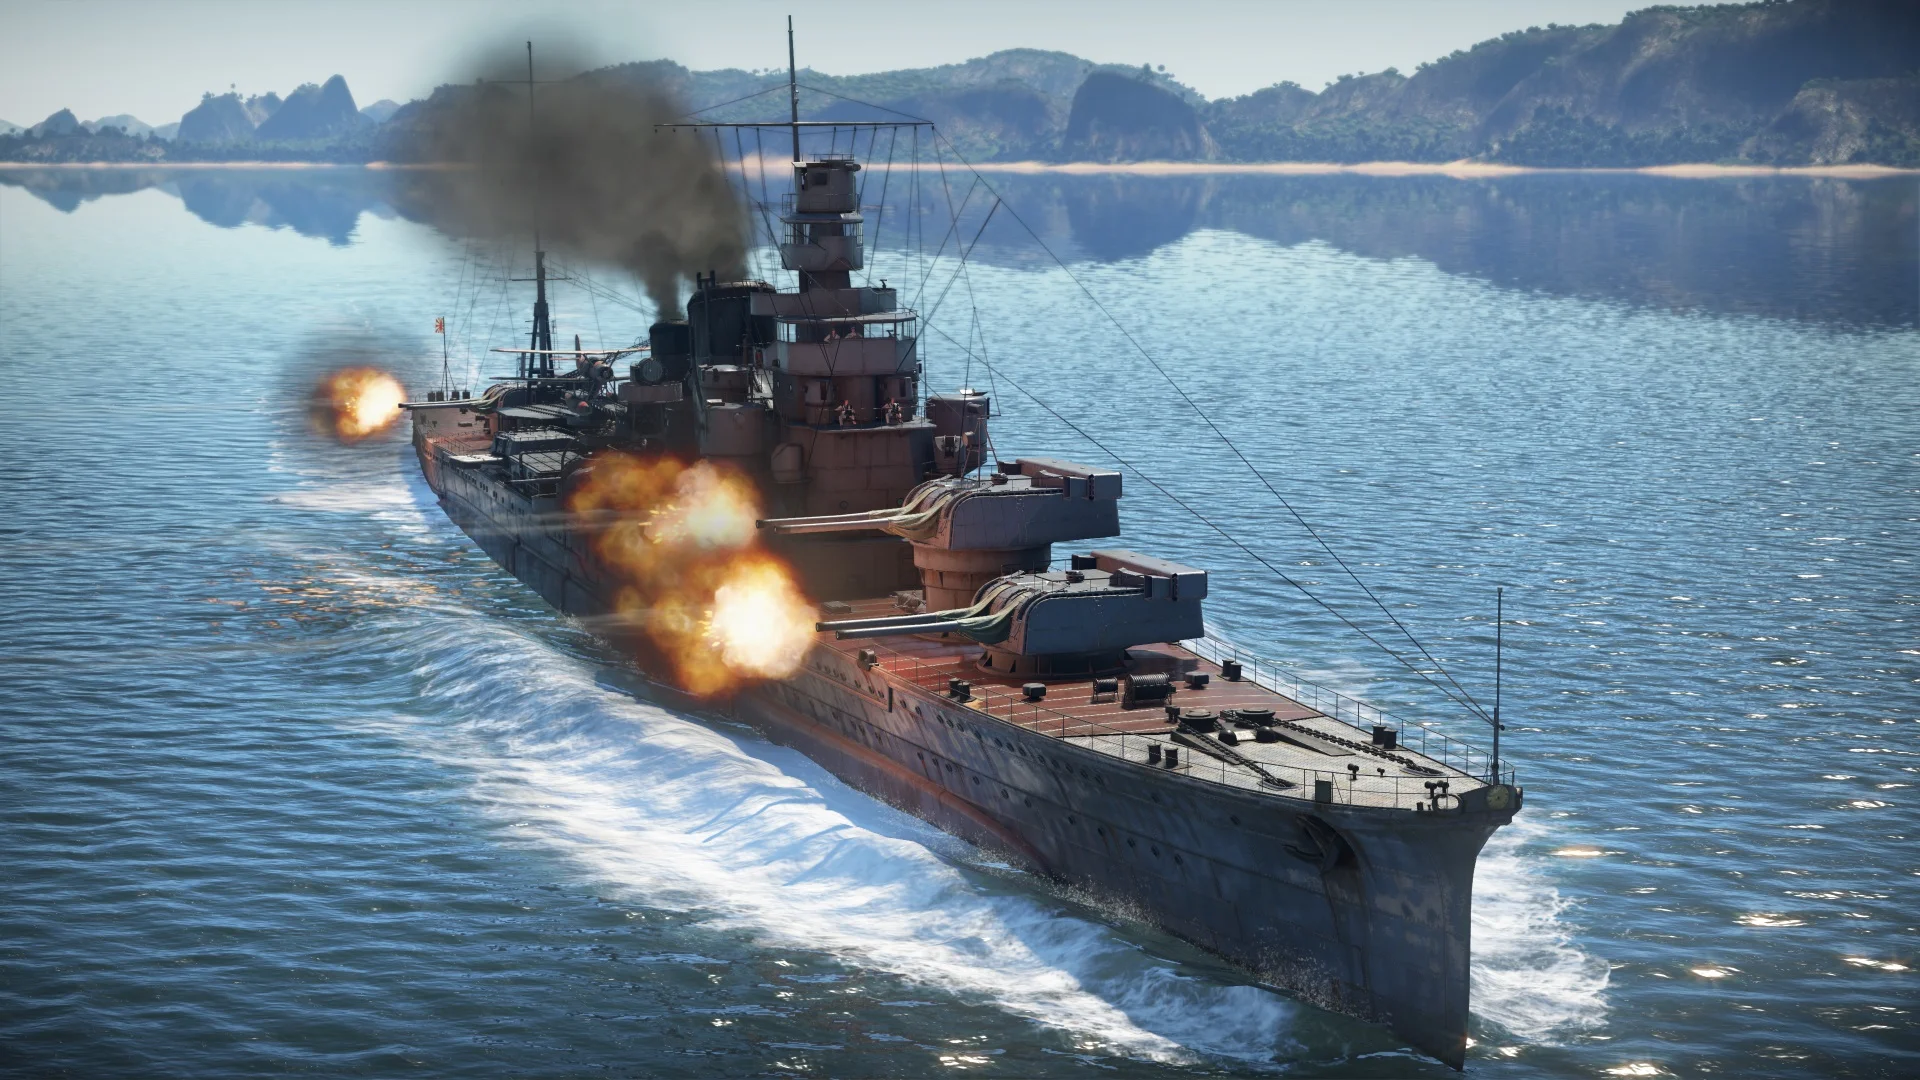 В War Thunder с обновлением 1.89 «Императорский флот» приходят японские боевые корабли. Вспоминаем флот Страны восходящего солнца времен Второй мировой войны, чтобы понять, на чем теперь будем выходить в море в War Thunder.